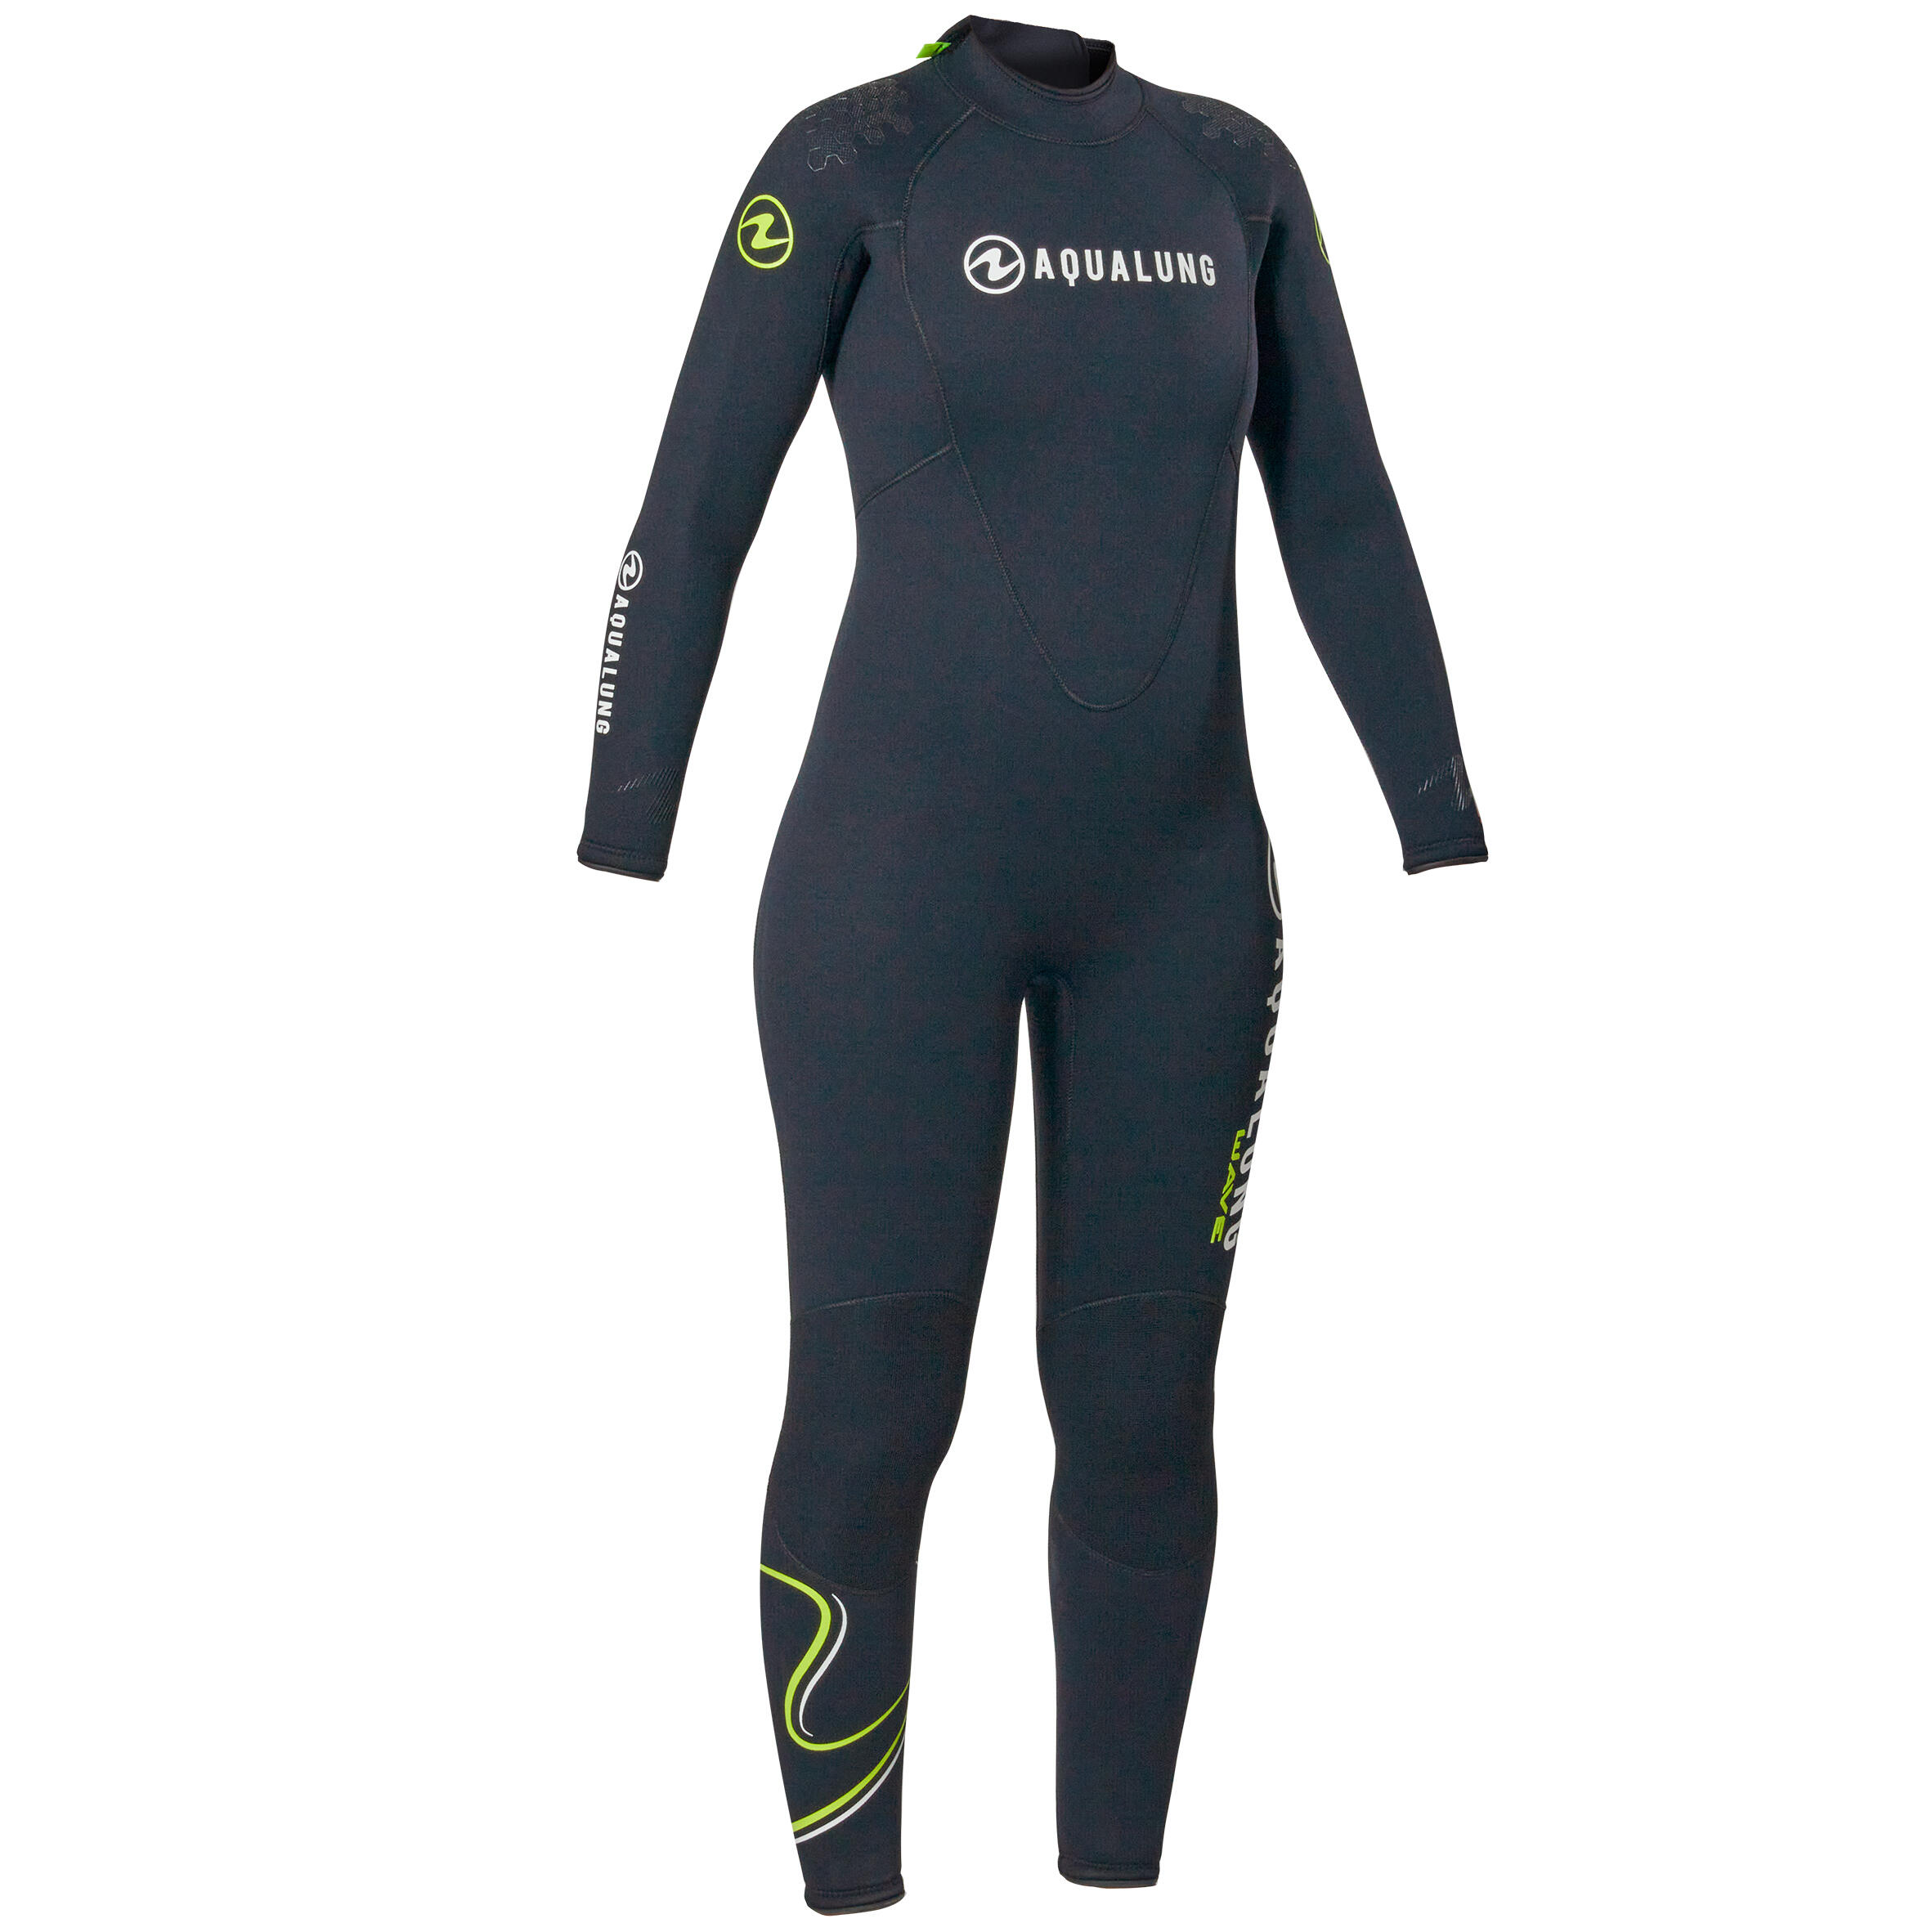 Women's diving wetsuit Aqualung 5.5 mm neoprene - WAVE Black/Yellow 8/8